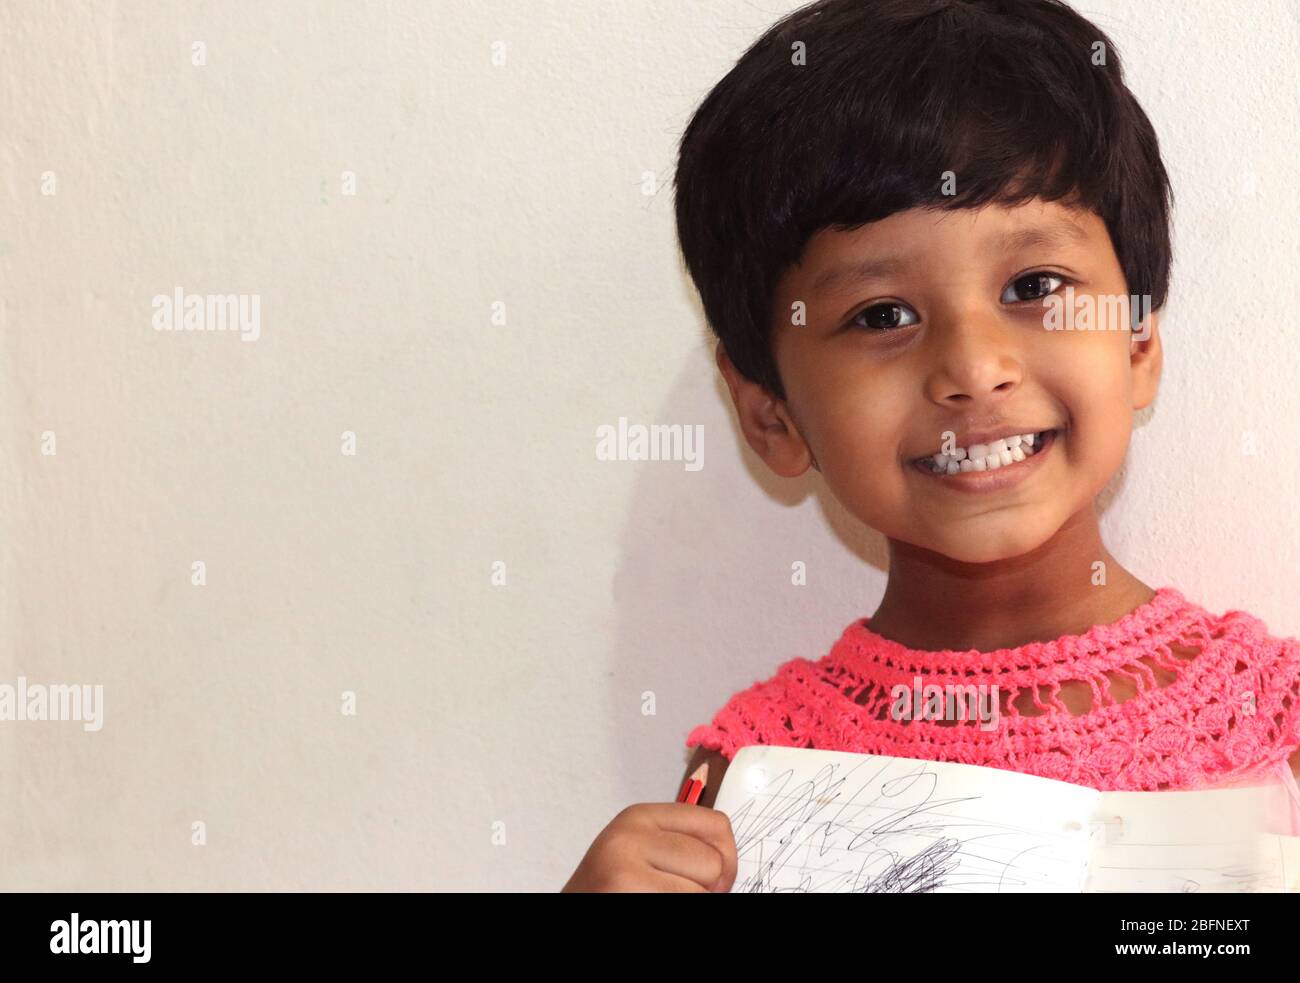 Una niña pequeña con cara sonriente y fondo blanco suave se ve muy hermoso Foto de stock